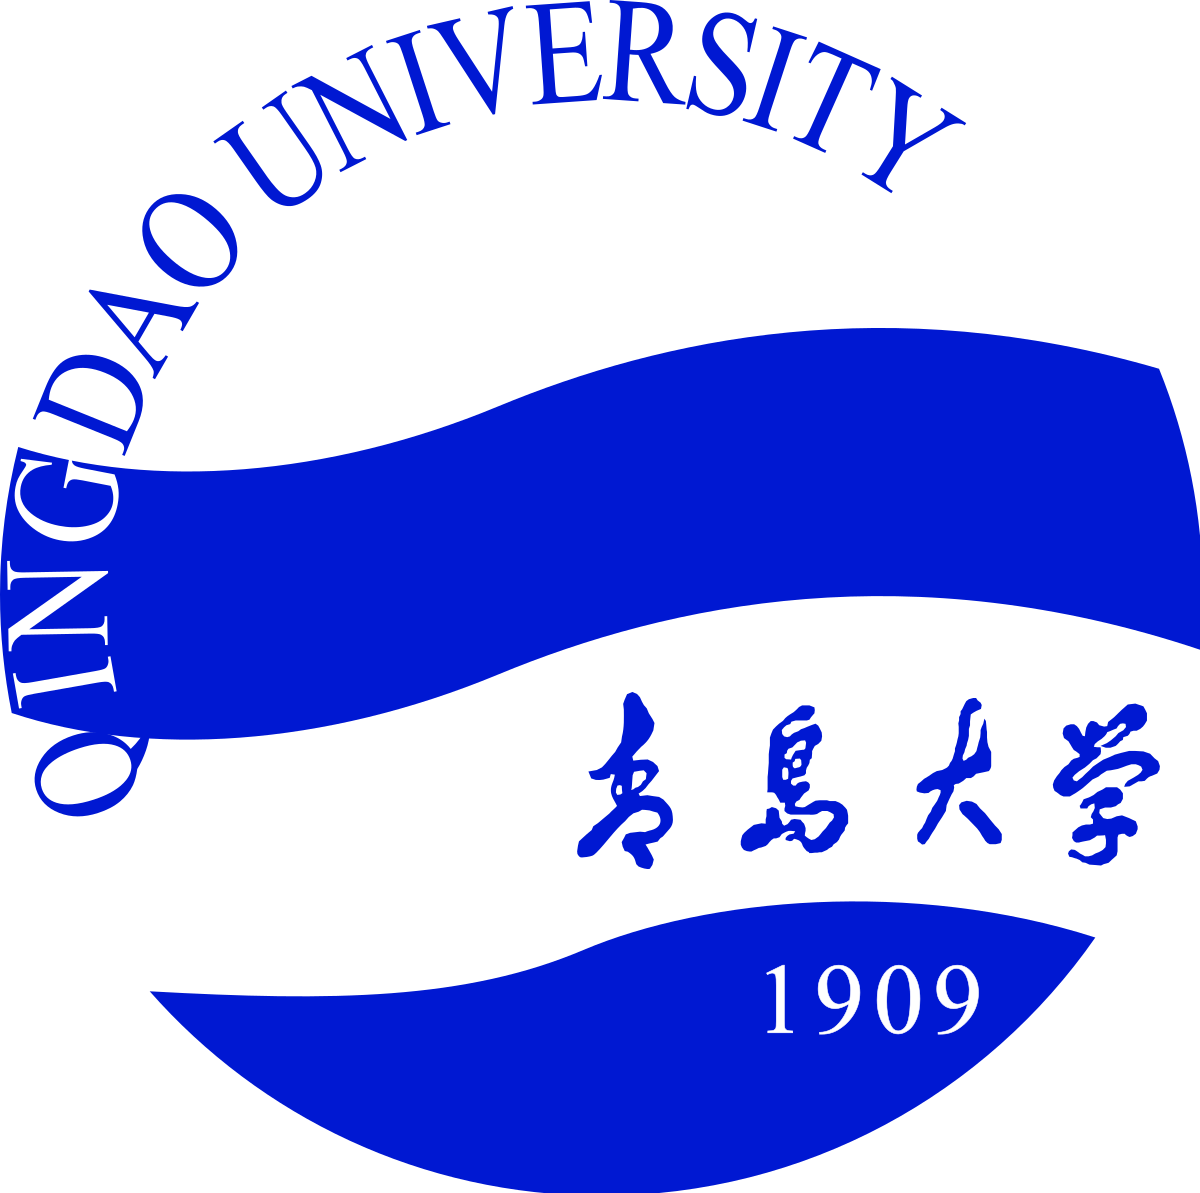 Qingdao University - Wikipedia